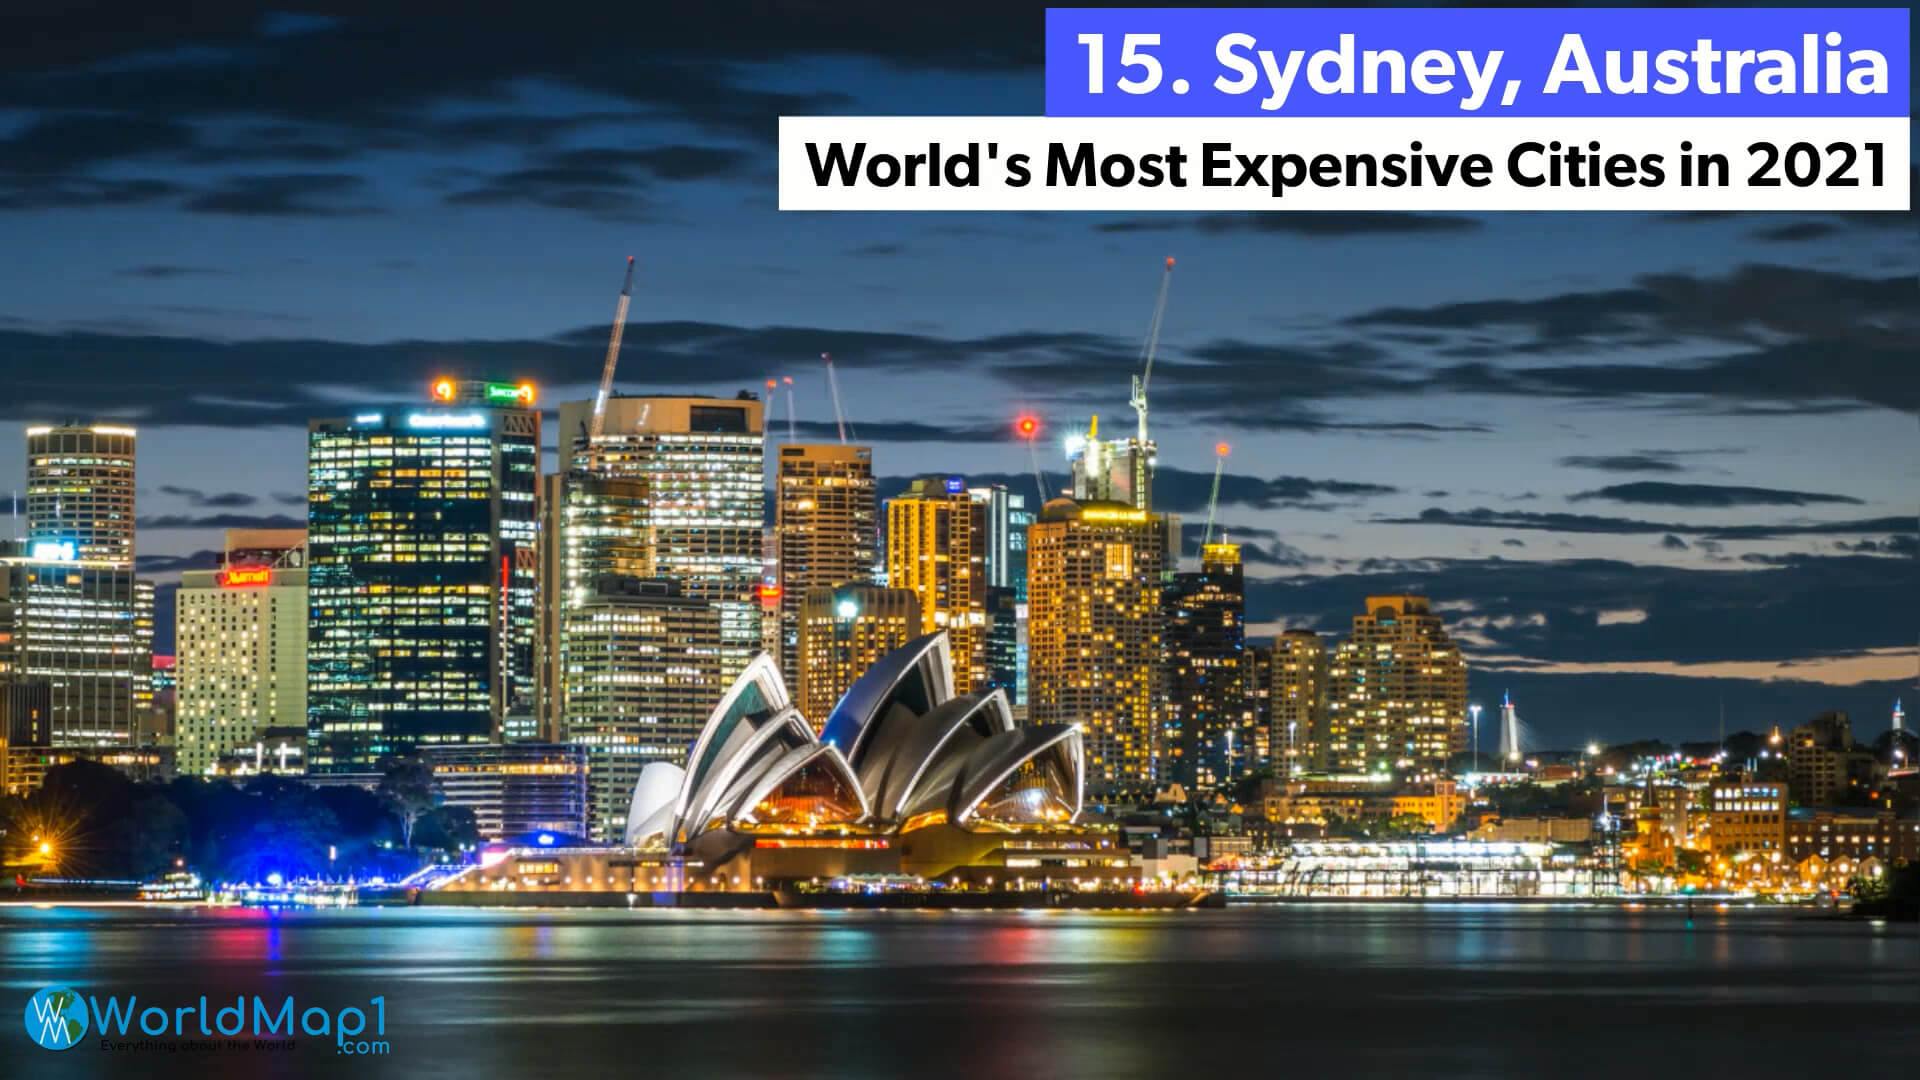 Les villes les plus chères du monde - Sydney, Australie